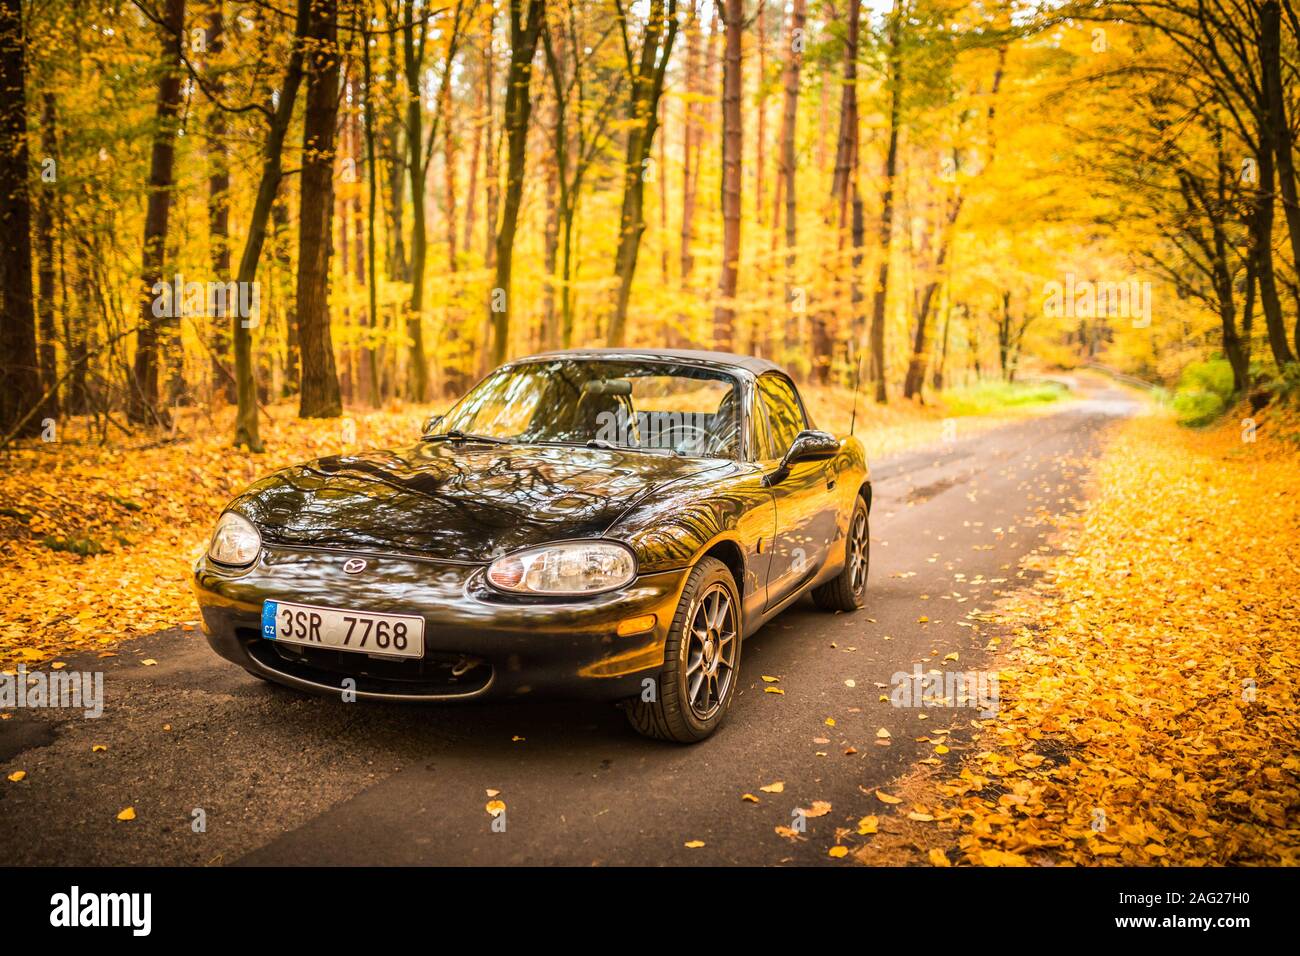 PRAGUE, RÉPUBLIQUE TCHÈQUE, octobre 2019 : Mazda MX-5 Miata NB de deuxième génération, l'année de modèle 1999 sur une route forrest en automne avec de belles automne coloré Banque D'Images